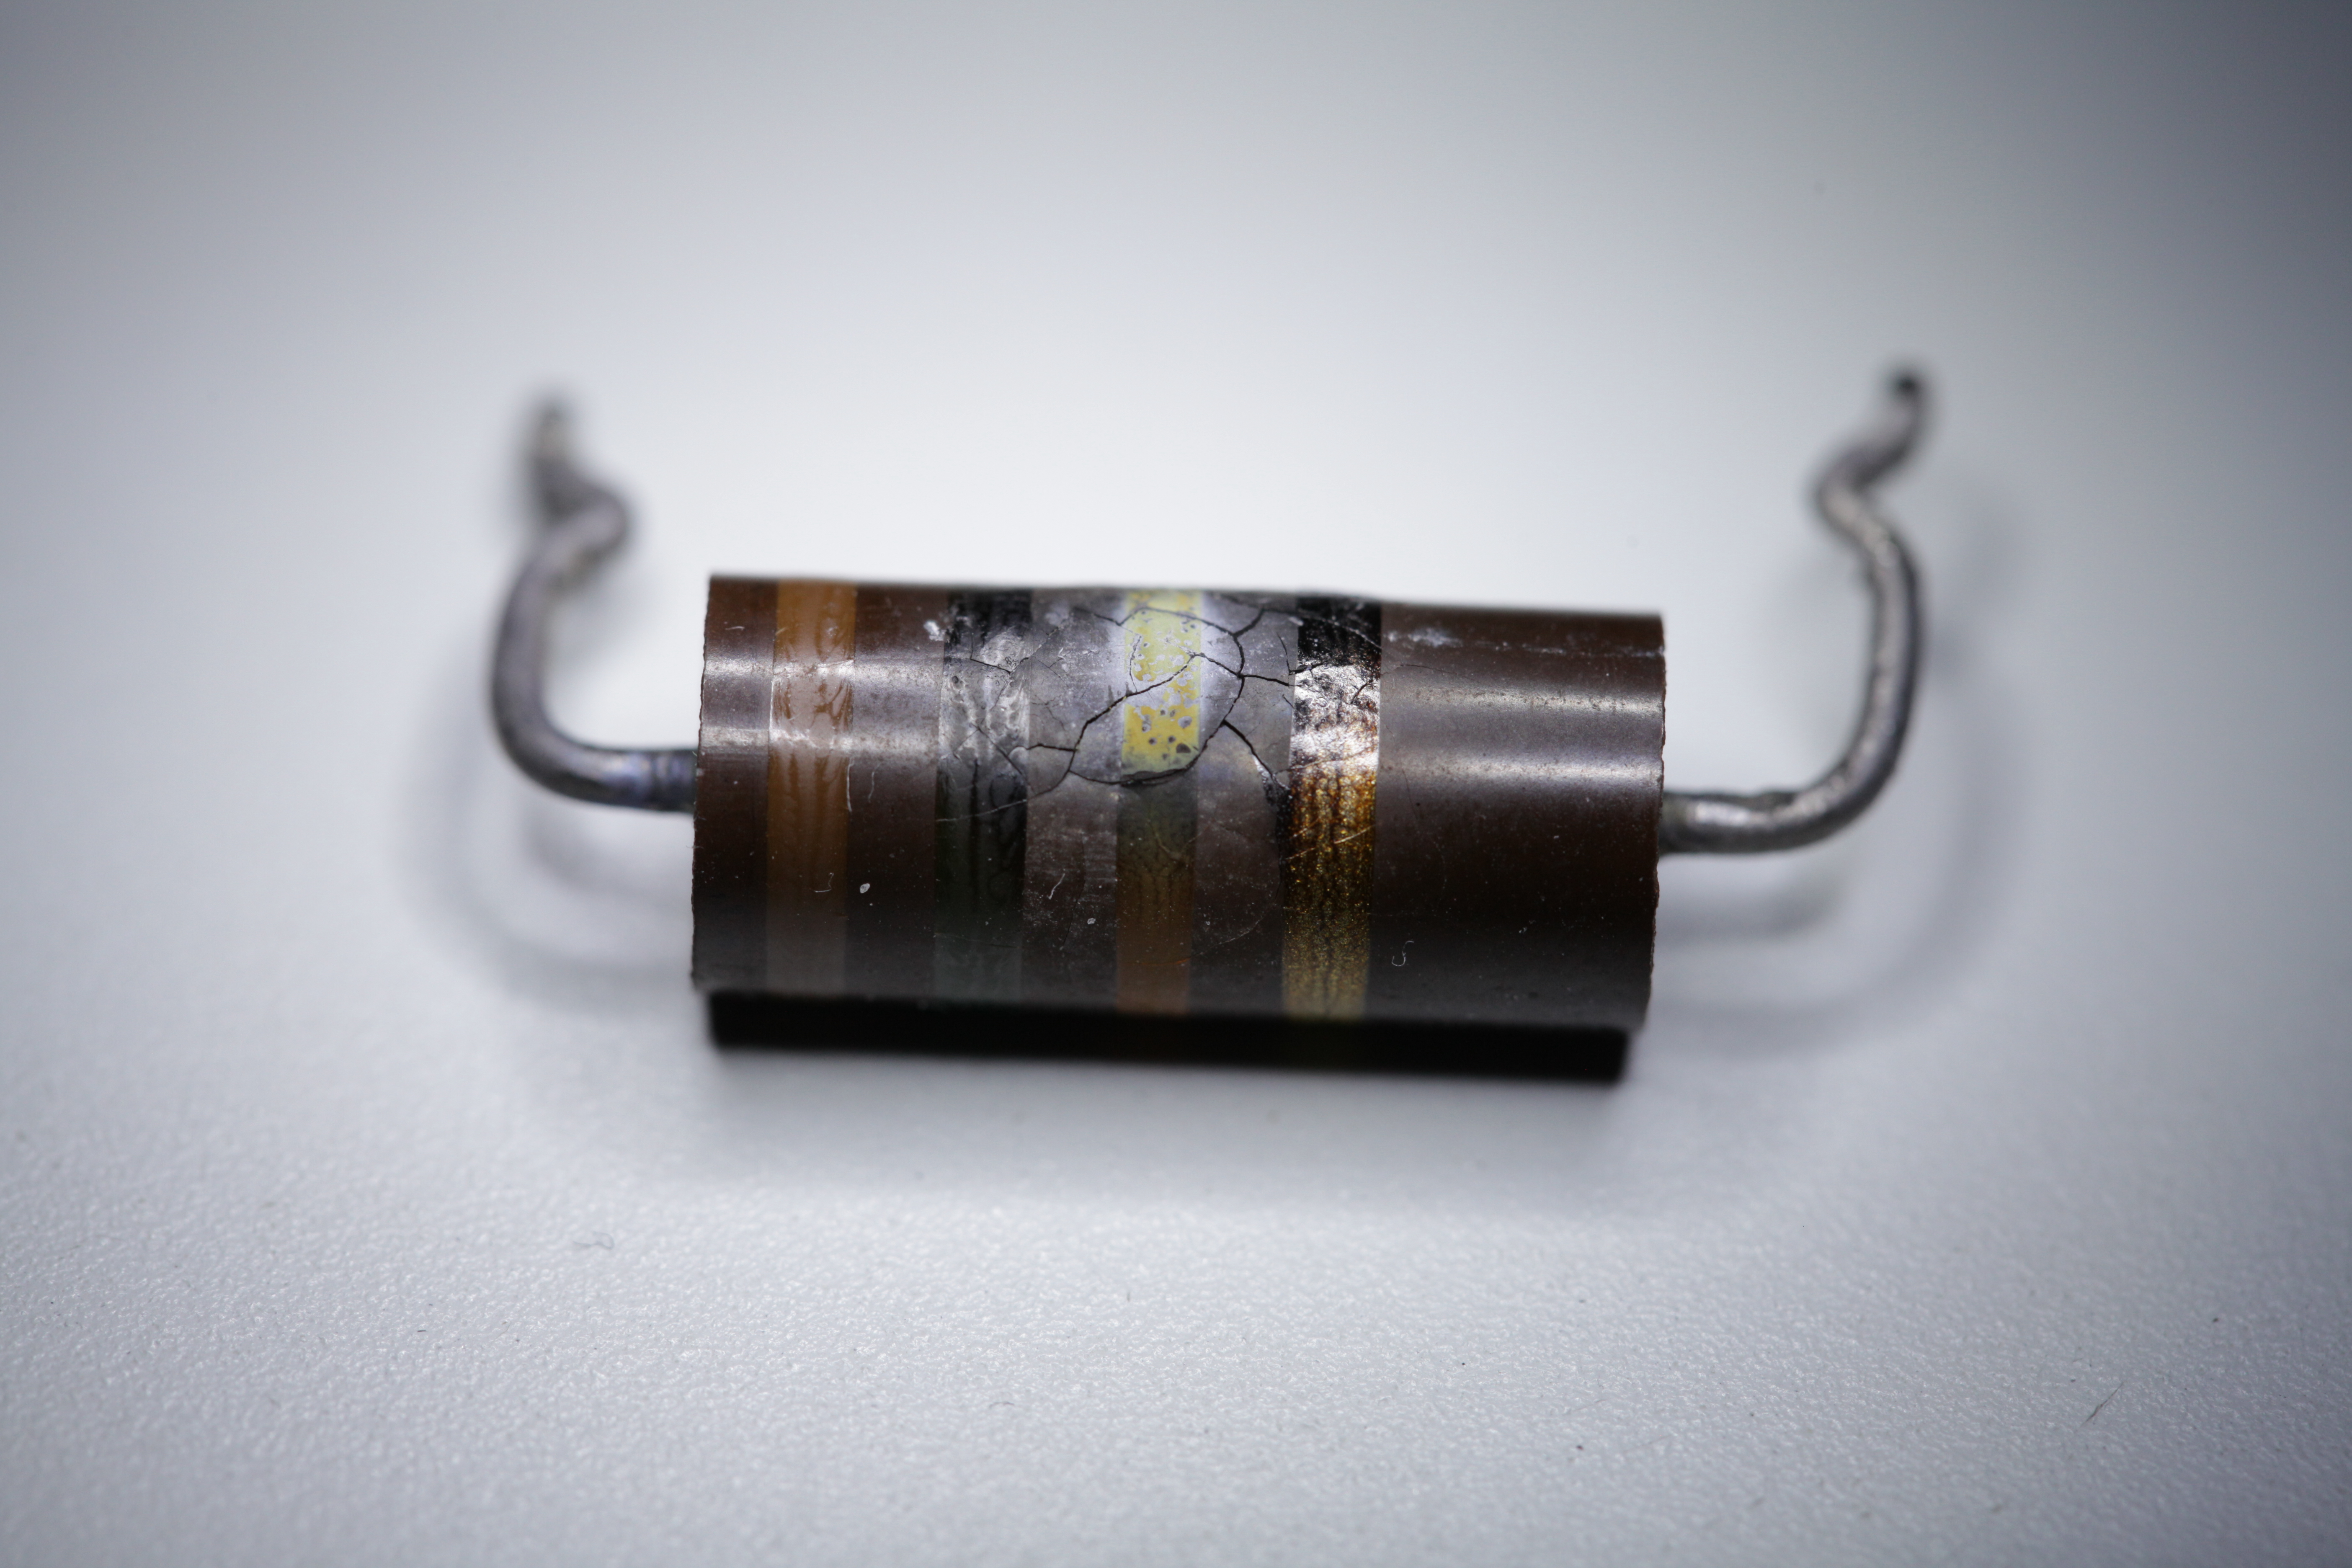 Burned Power resistor